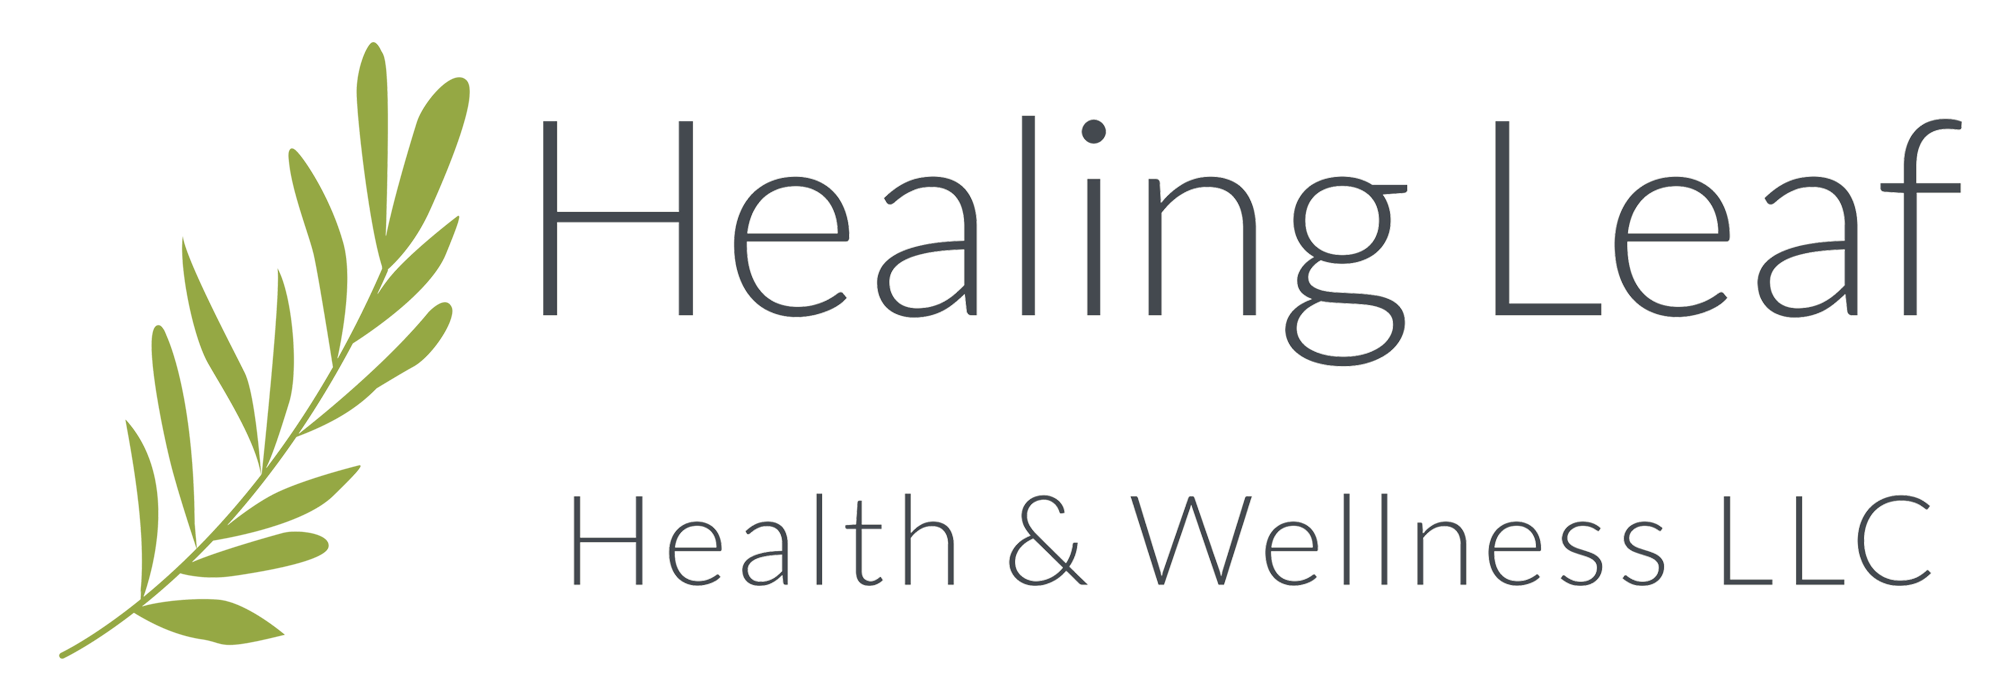 Healing Leaf Health & Wellness